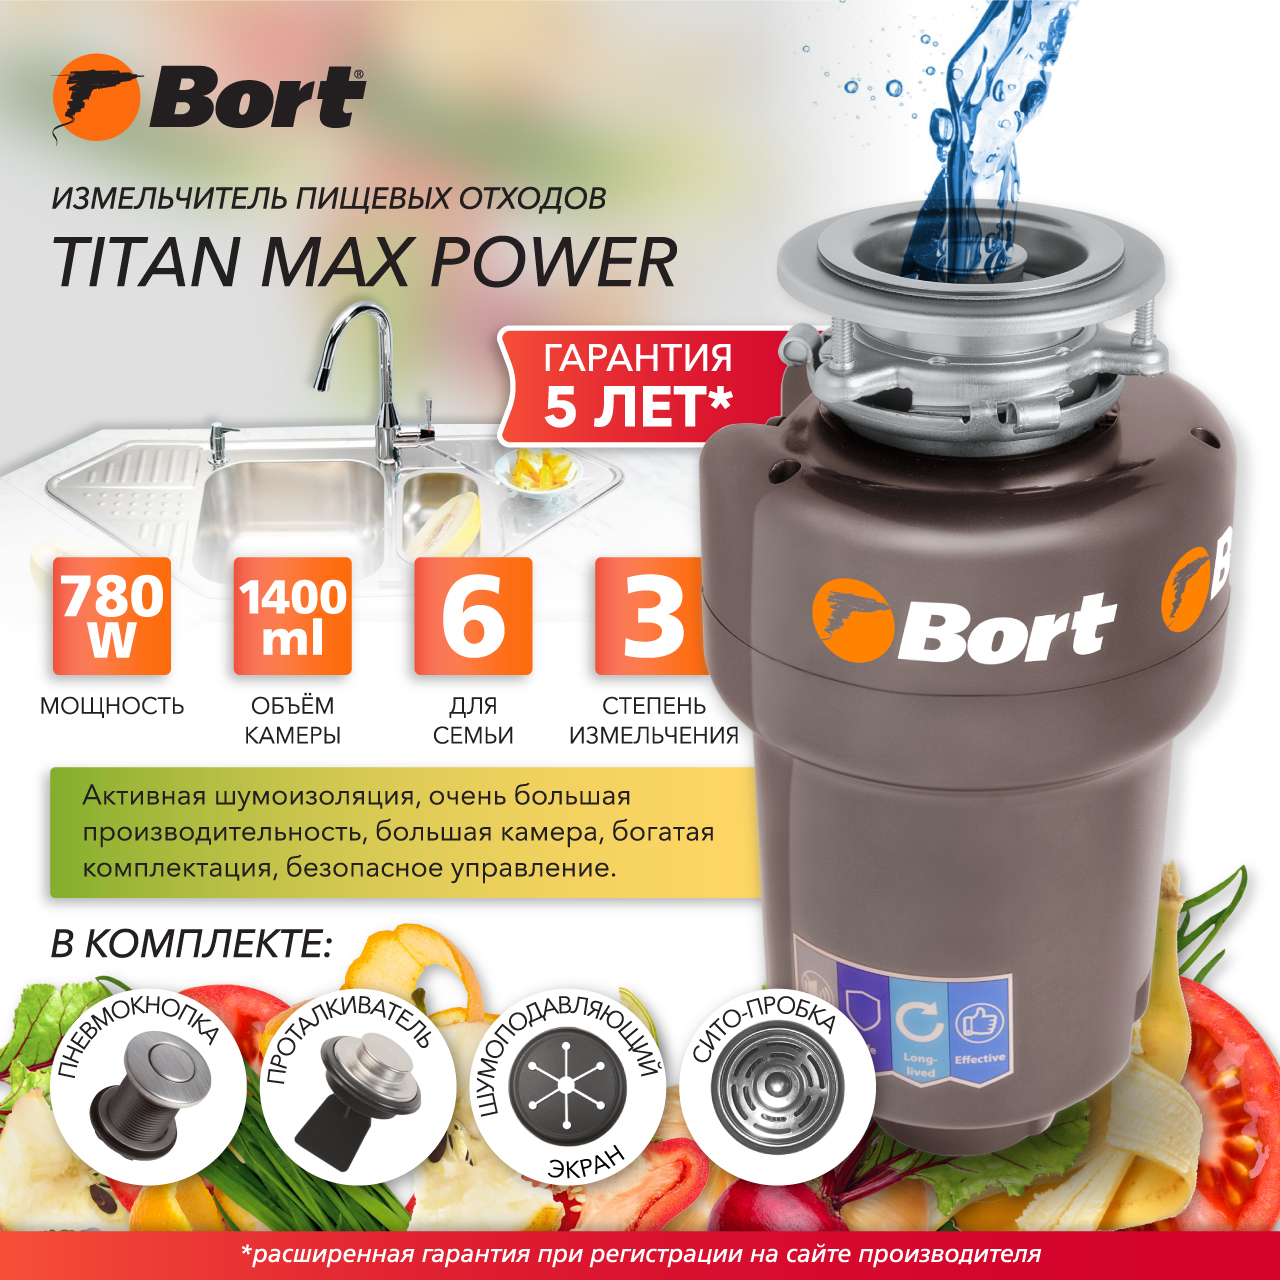 Измельчитель пищевых отходов Bort TITAN MAX POWER (91275790) серебристый измельчитель пищевых отходов bort titan max power 91275790 серебристый